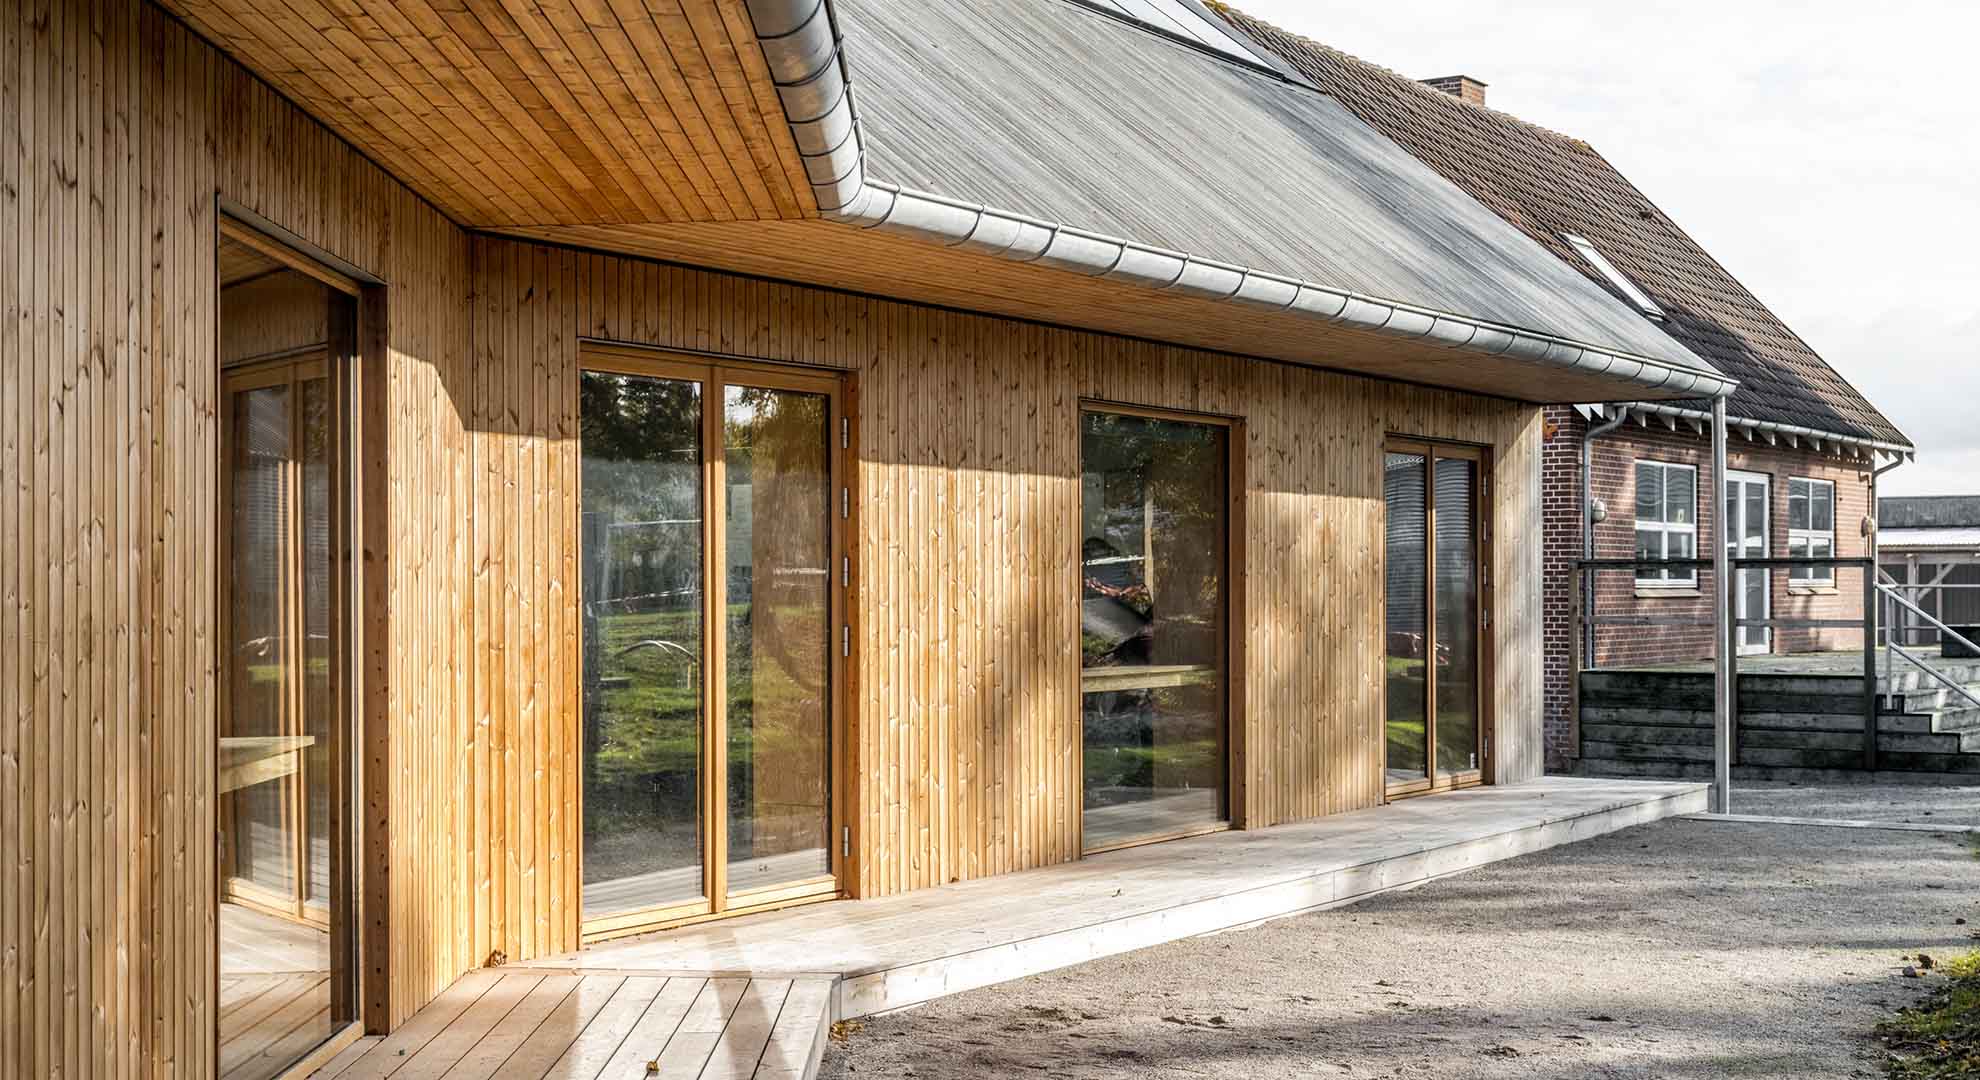 Materiales como la madera y la paja se usaron en un muro estructural exterior en Dinamarca.